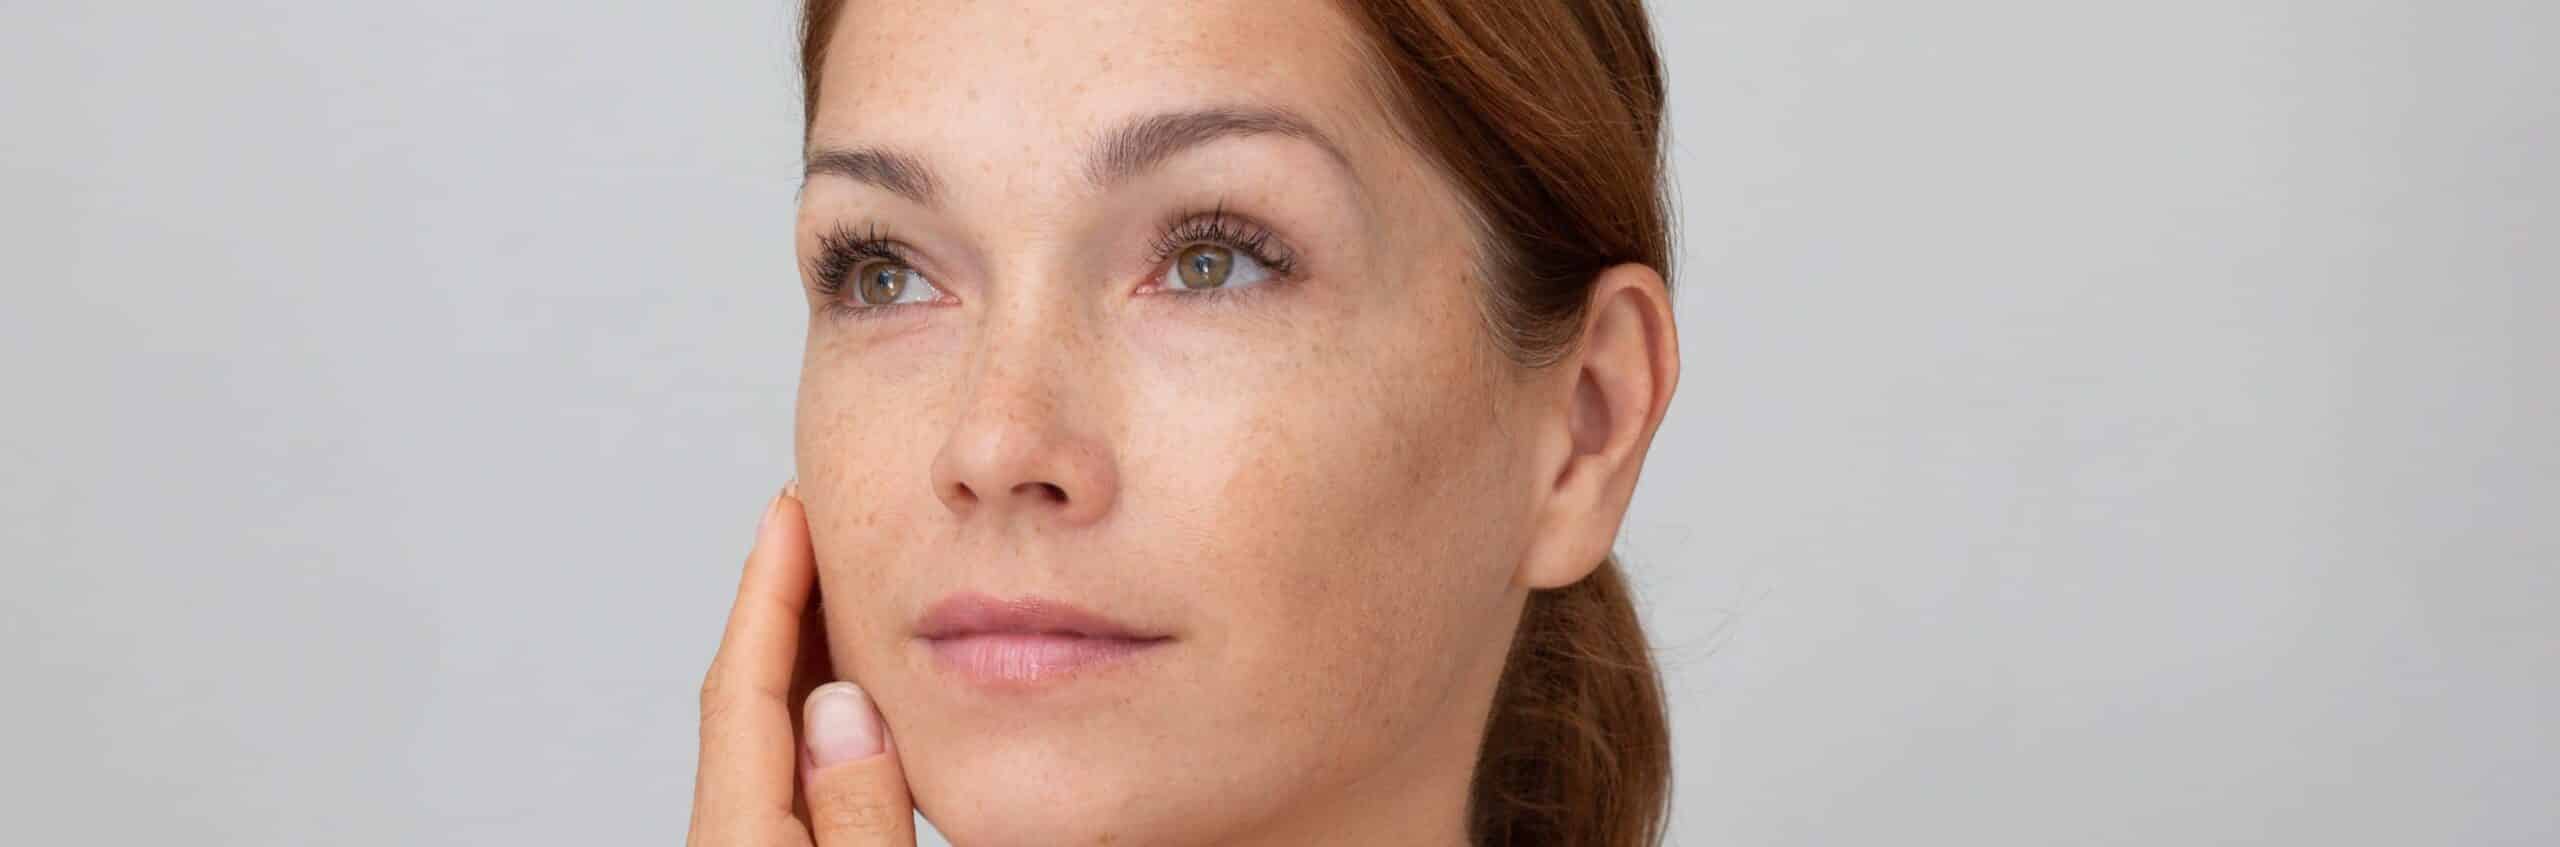 Mes joues sont creusées : comment leur redonner du volume ? |Dr Elisa Pecorelli | Paris